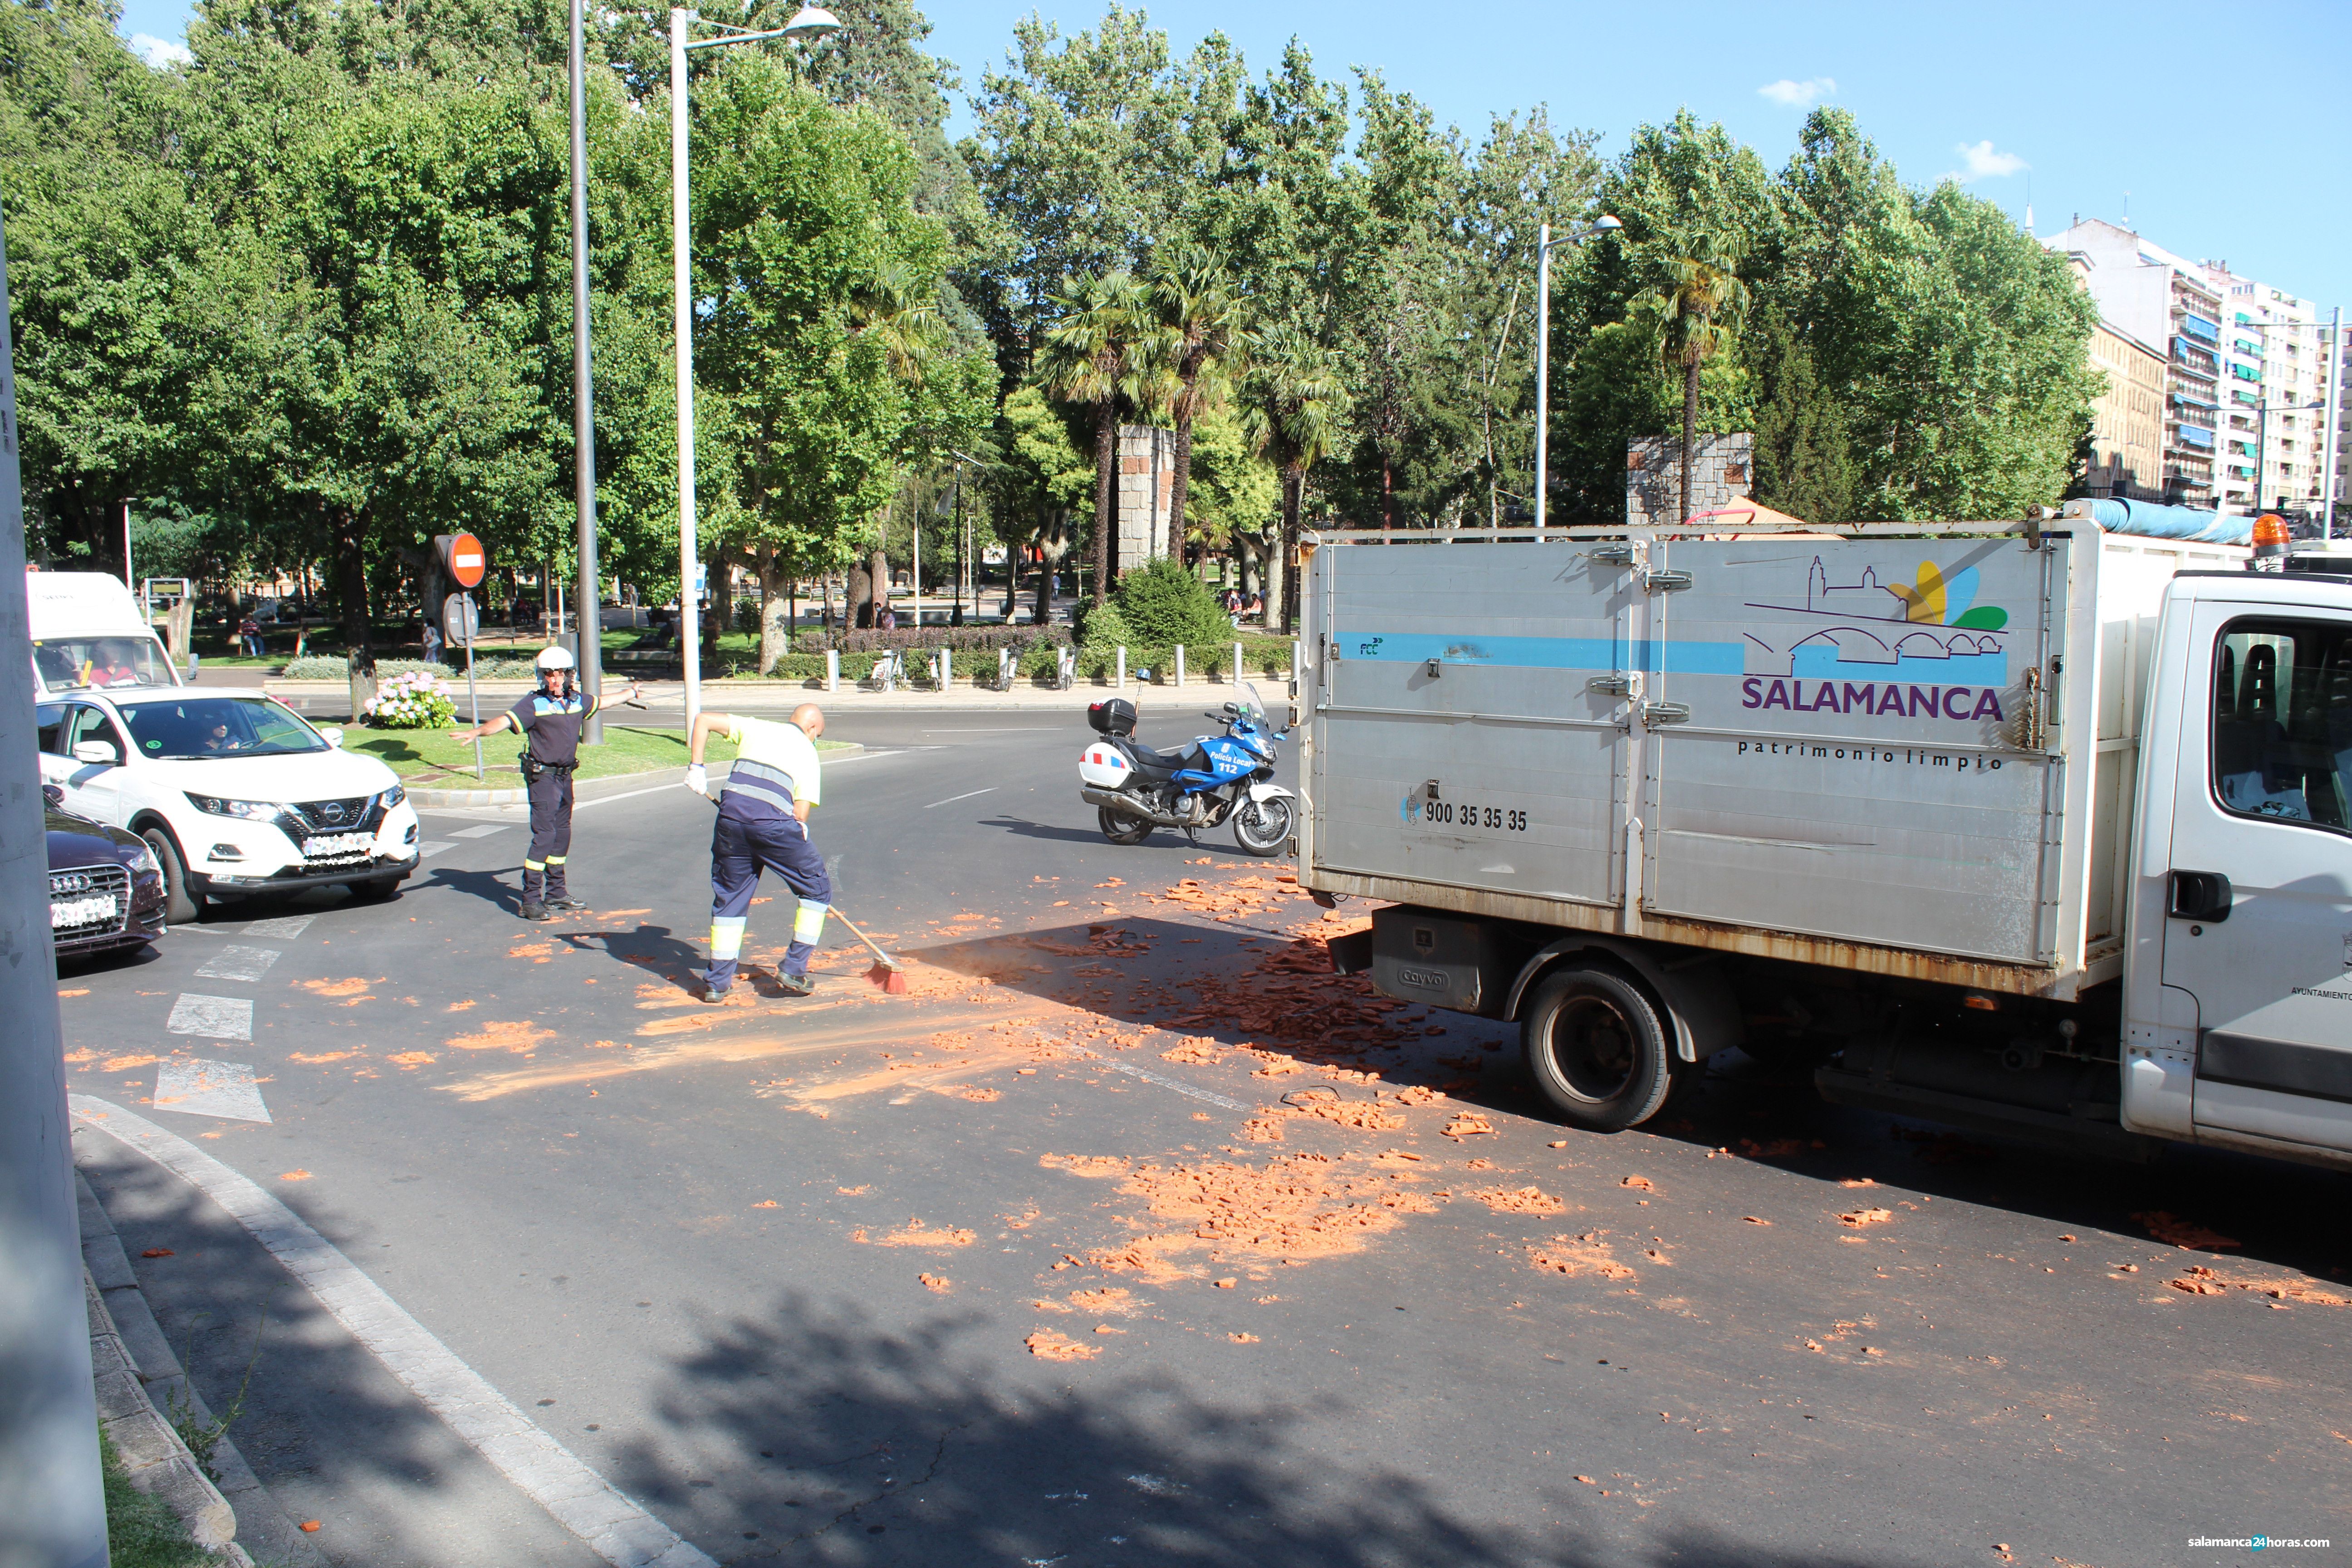  Accidente camión Plaza España (8) 